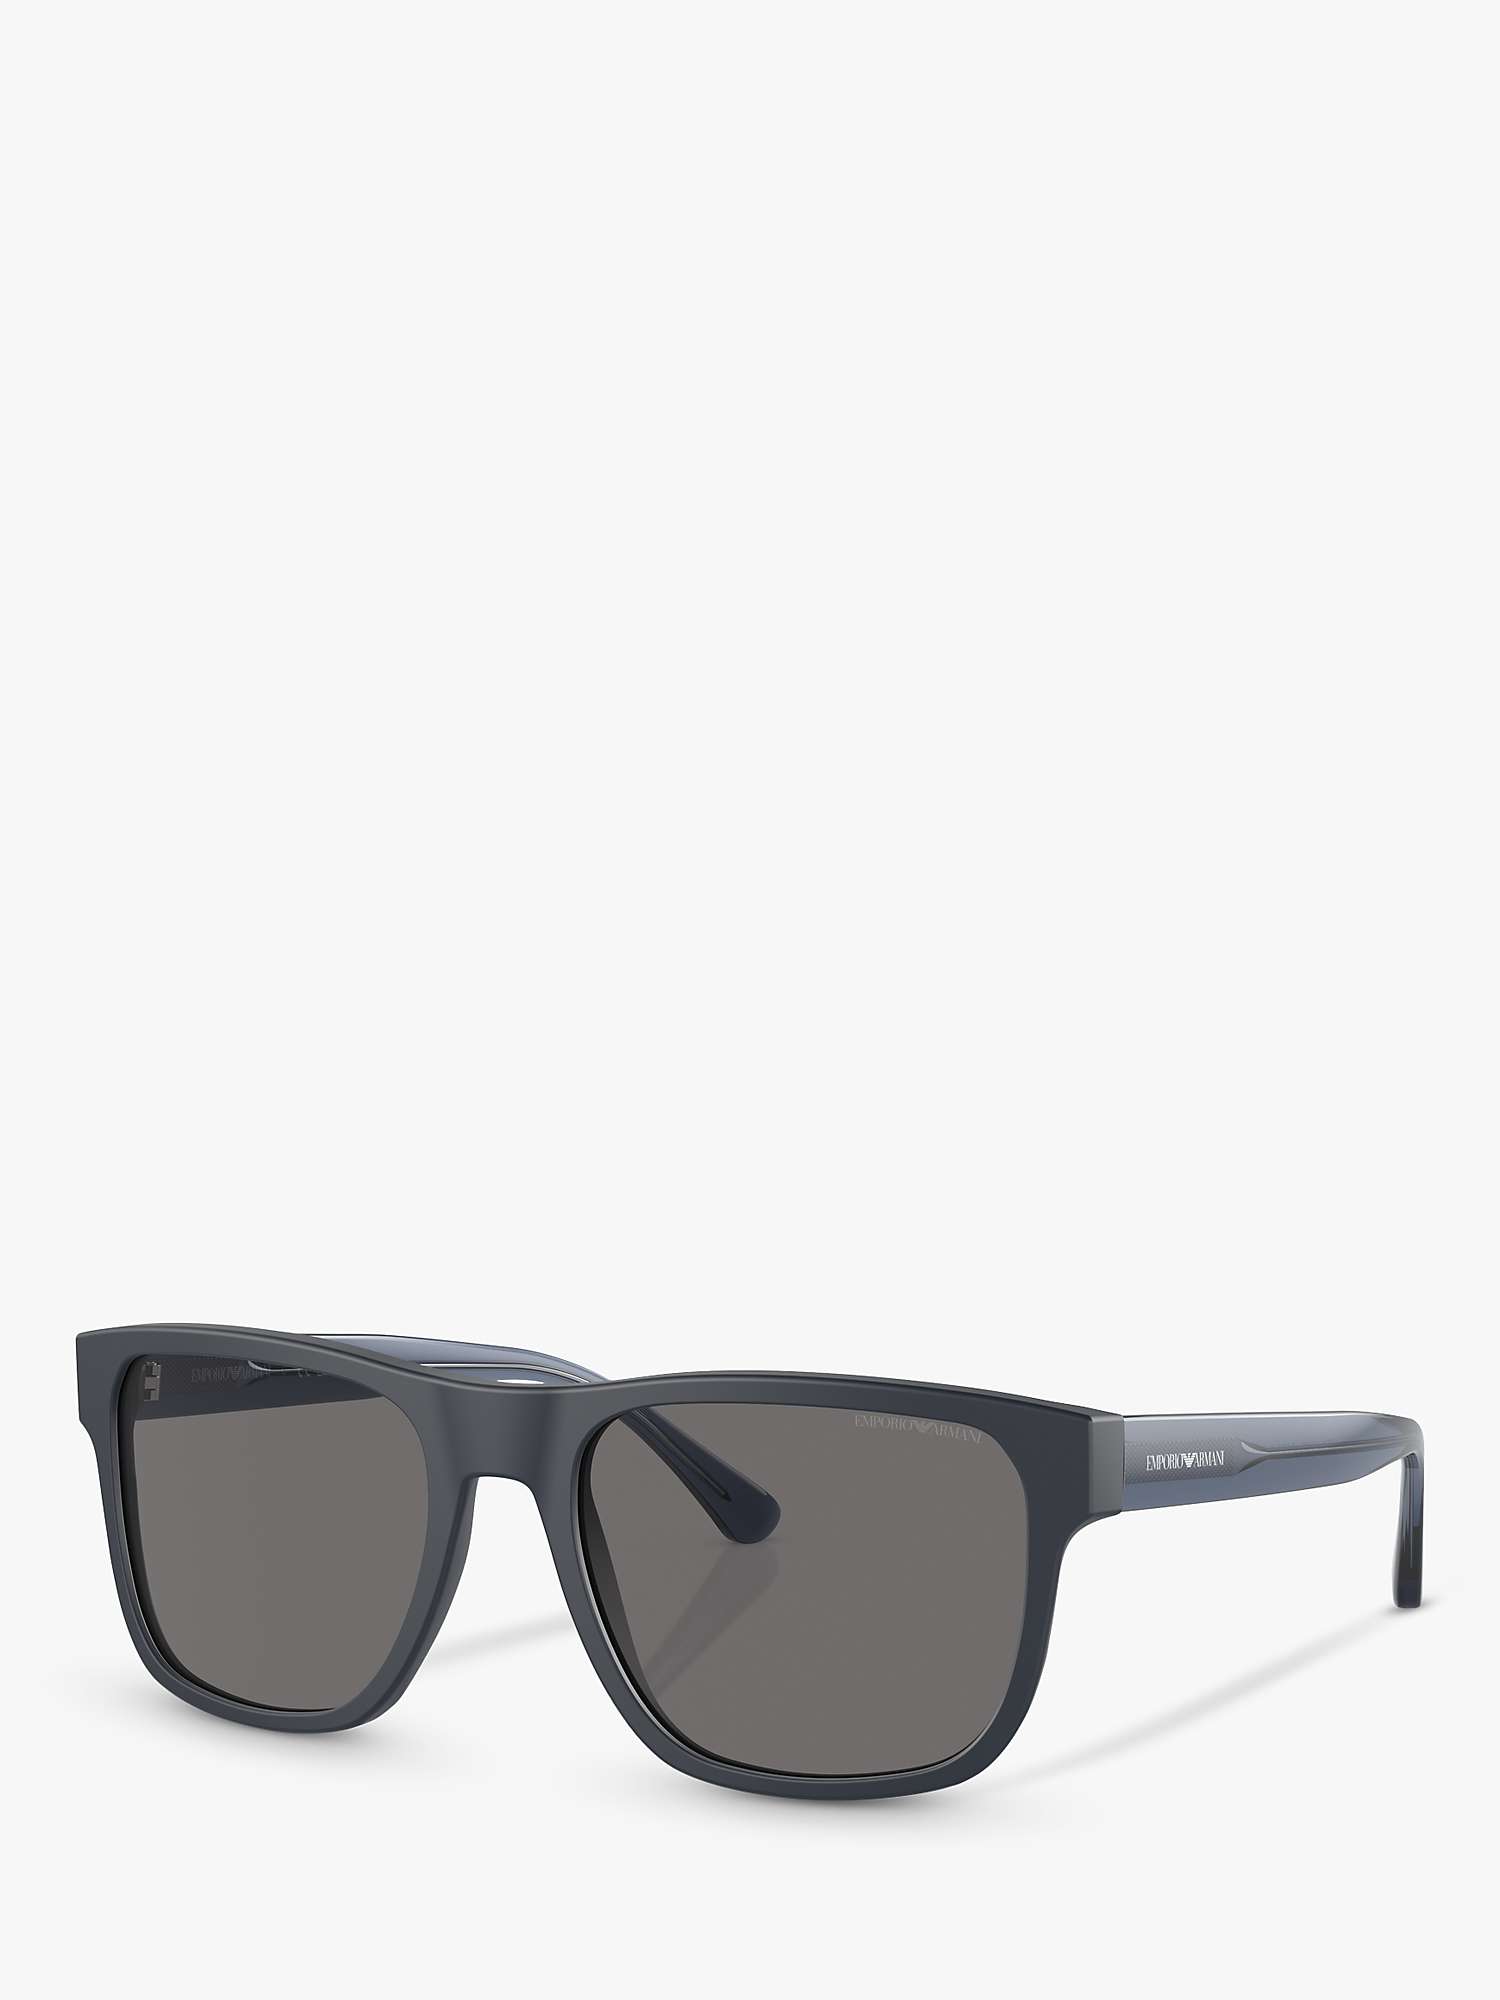 Buy Emporio Armani EA4163 Men's Polarised Square Sunglasses, Matte Blue/Grey Online at johnlewis.com